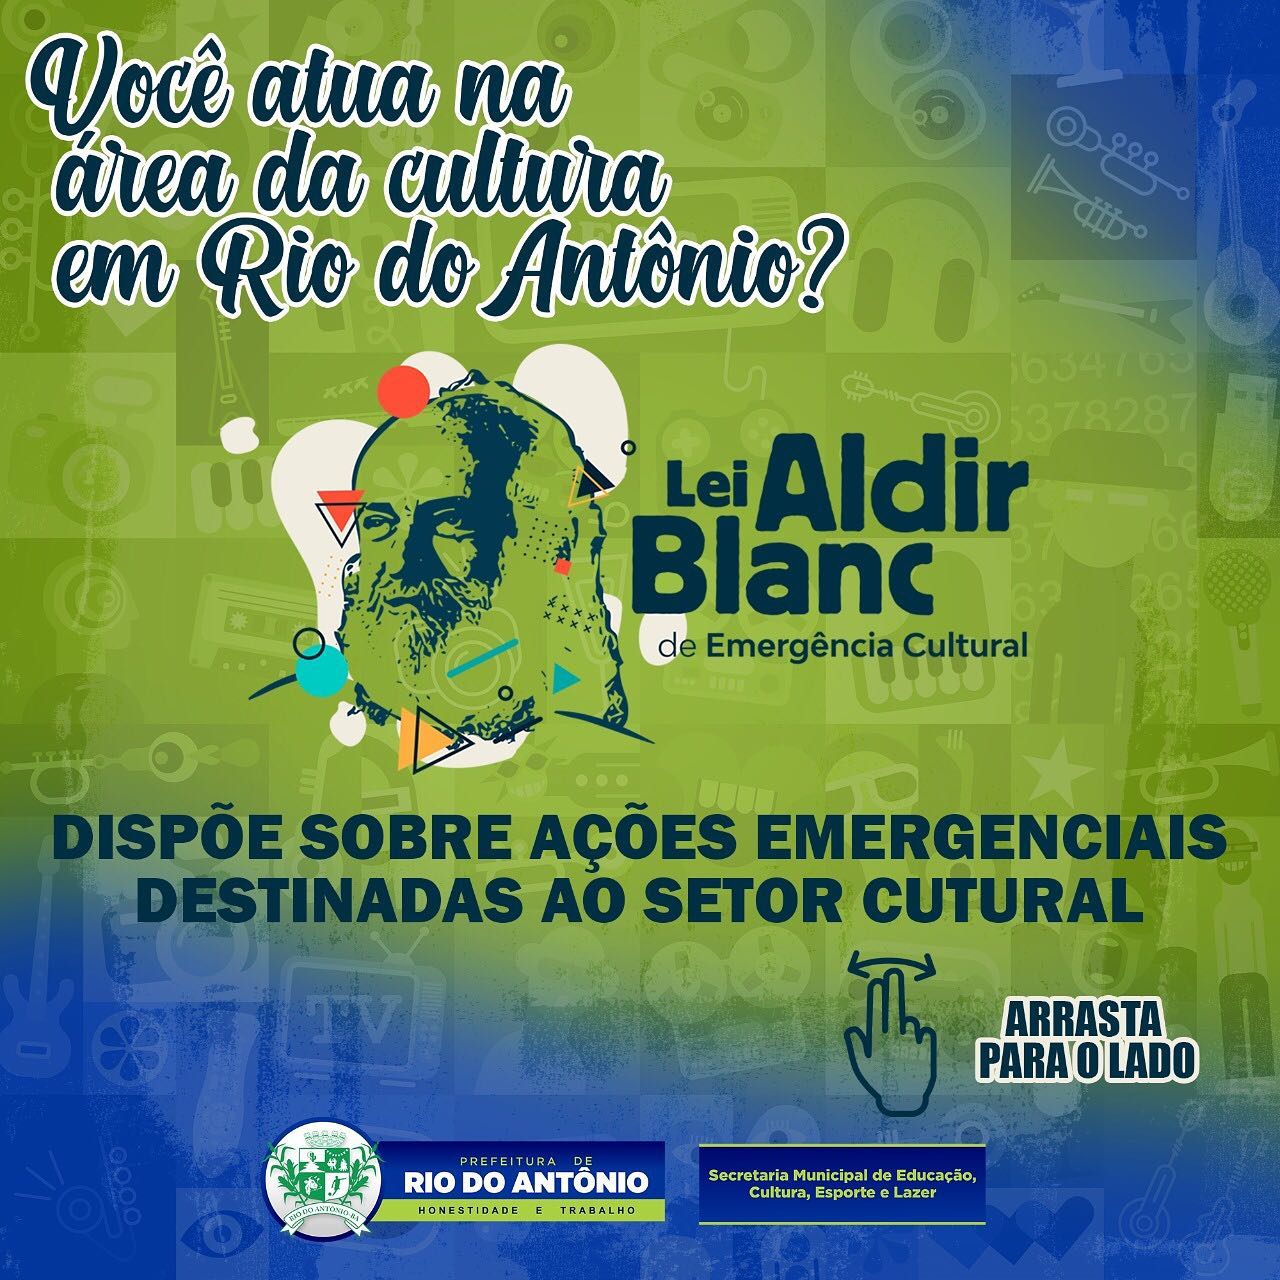 Aldir Blanc: Prefeitura de Rio do Antônio abre credenciamento para artistas e instituições culturais